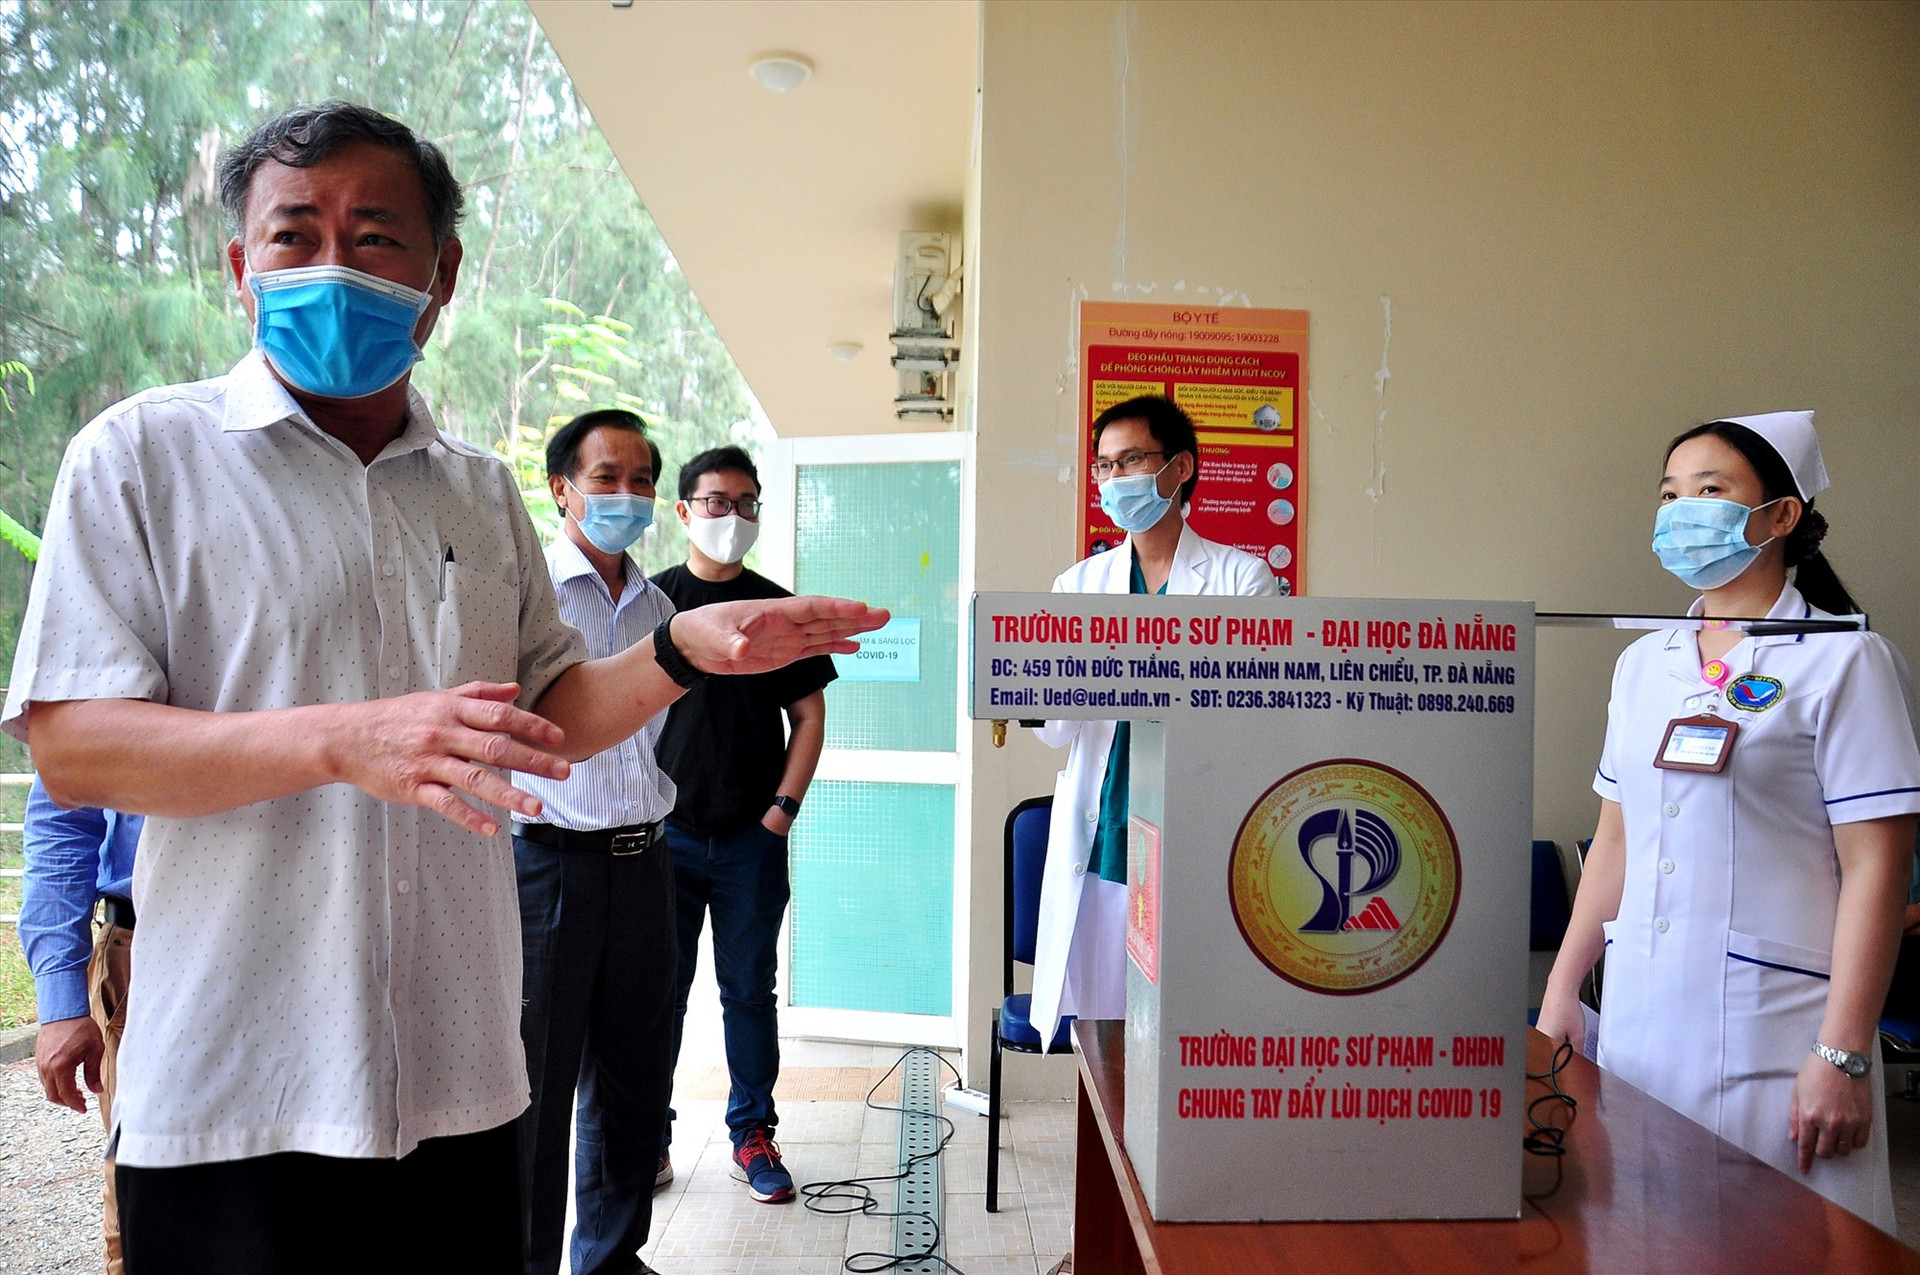 PGS.TS. Lưu Trương - Hiệu trưởng Trường ĐH Sư phạm Đà Nẵng (trái) giới thiệu về máy rửa tay sát khuẩn. Ảnh: VINH ANH